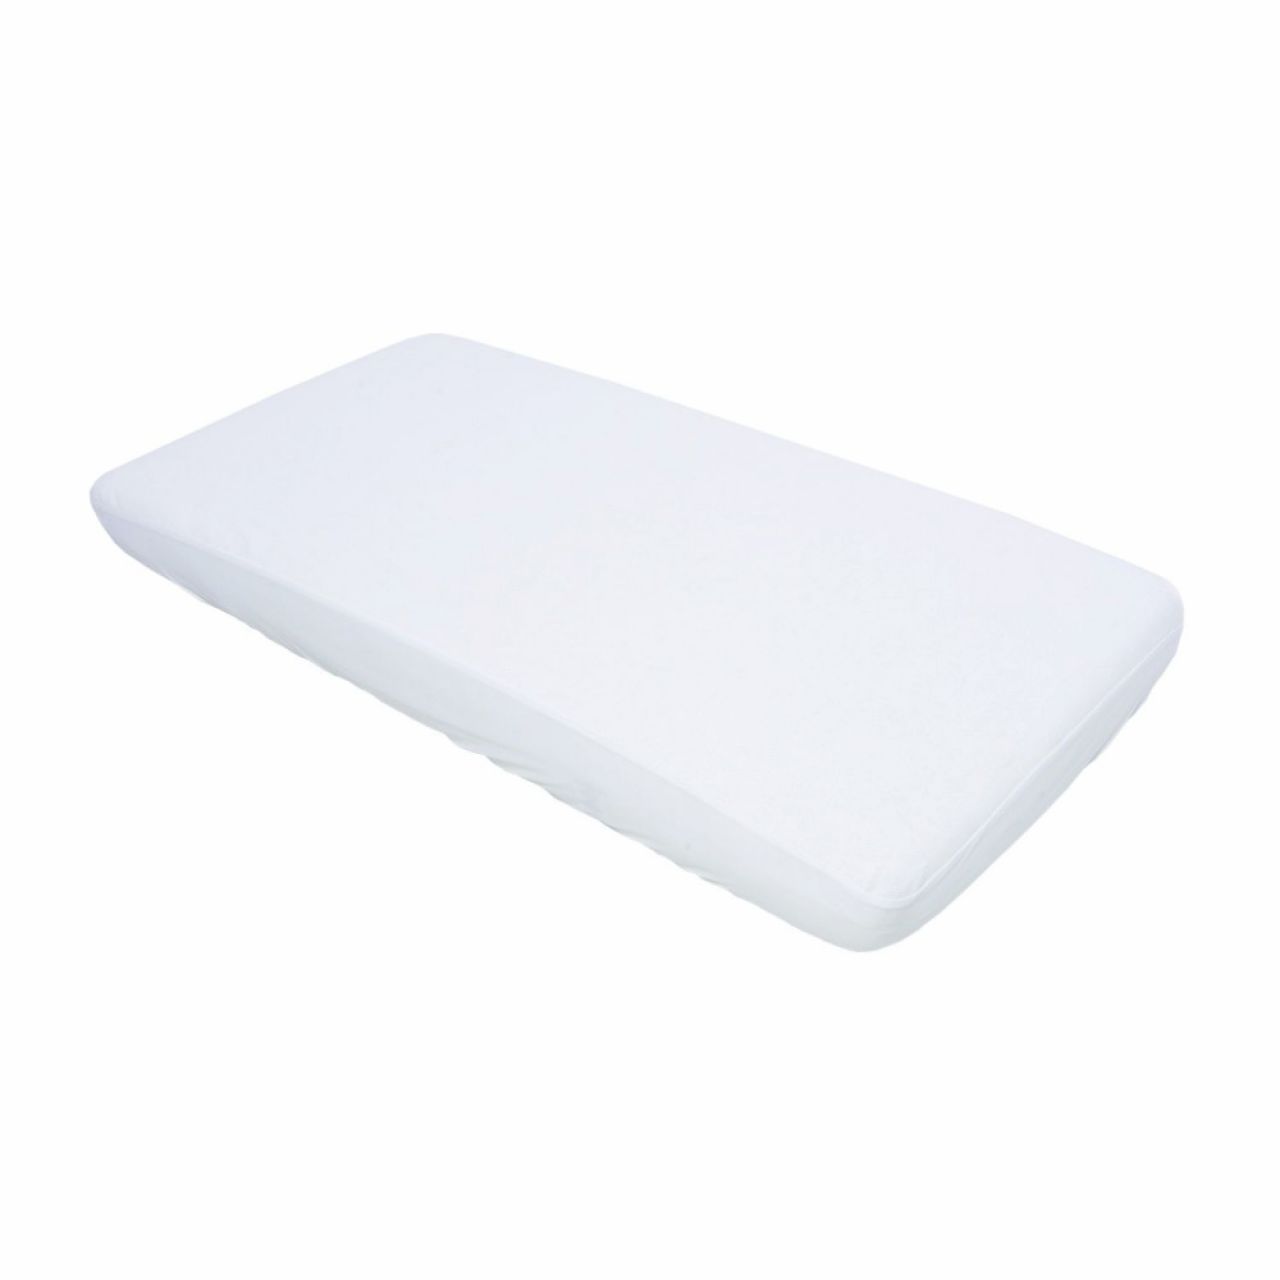 Destacada Protector antibacterial para colchón de cuna 60 x 120 x 15 cm.